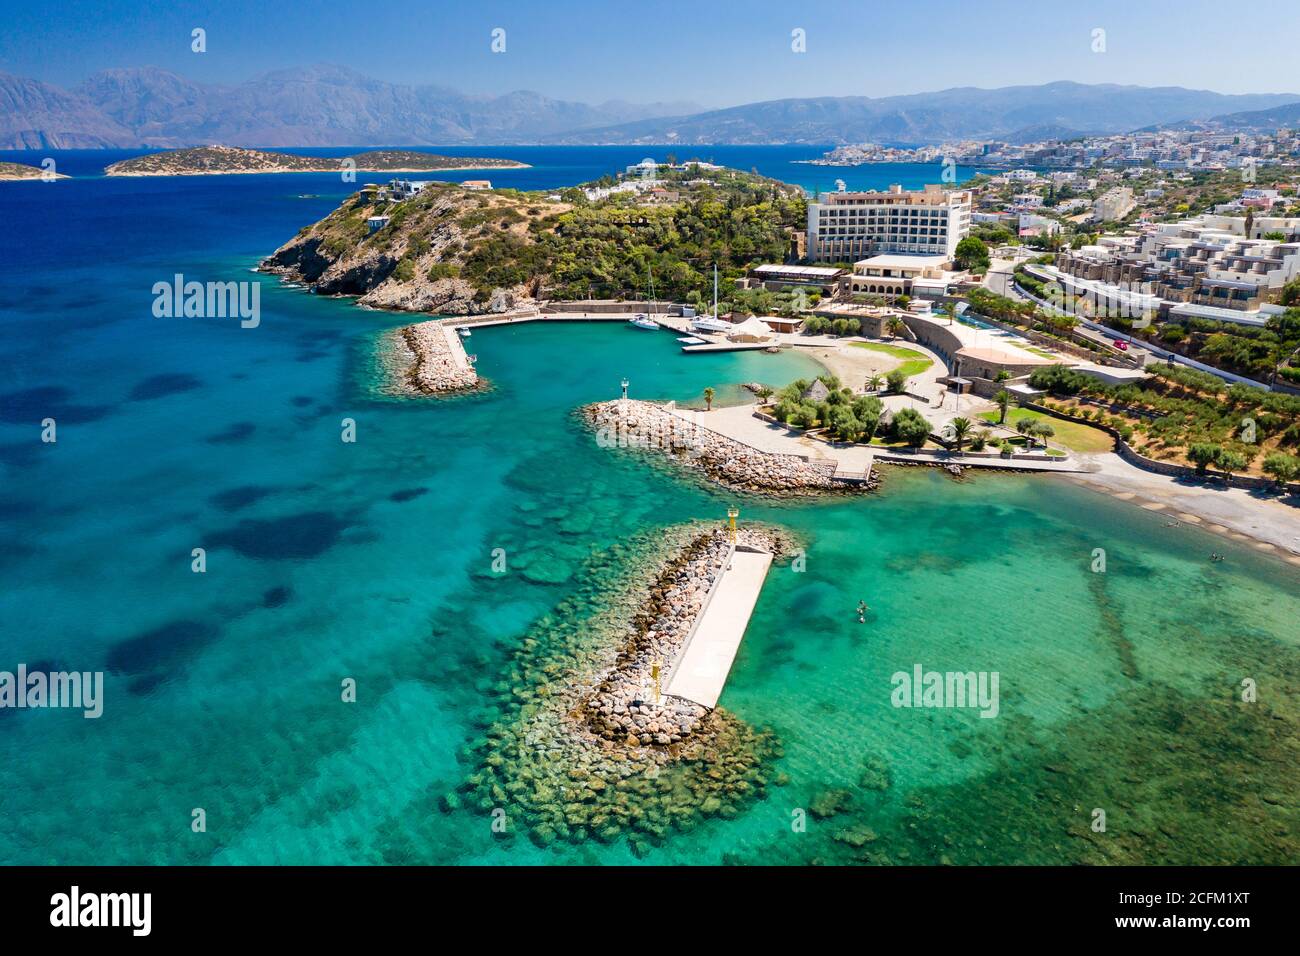 Vue aérienne des eaux cristallines de la mer de Crète et du golfe de Mirabello (Agios Nikolaos, Crète, Grèce) Banque D'Images